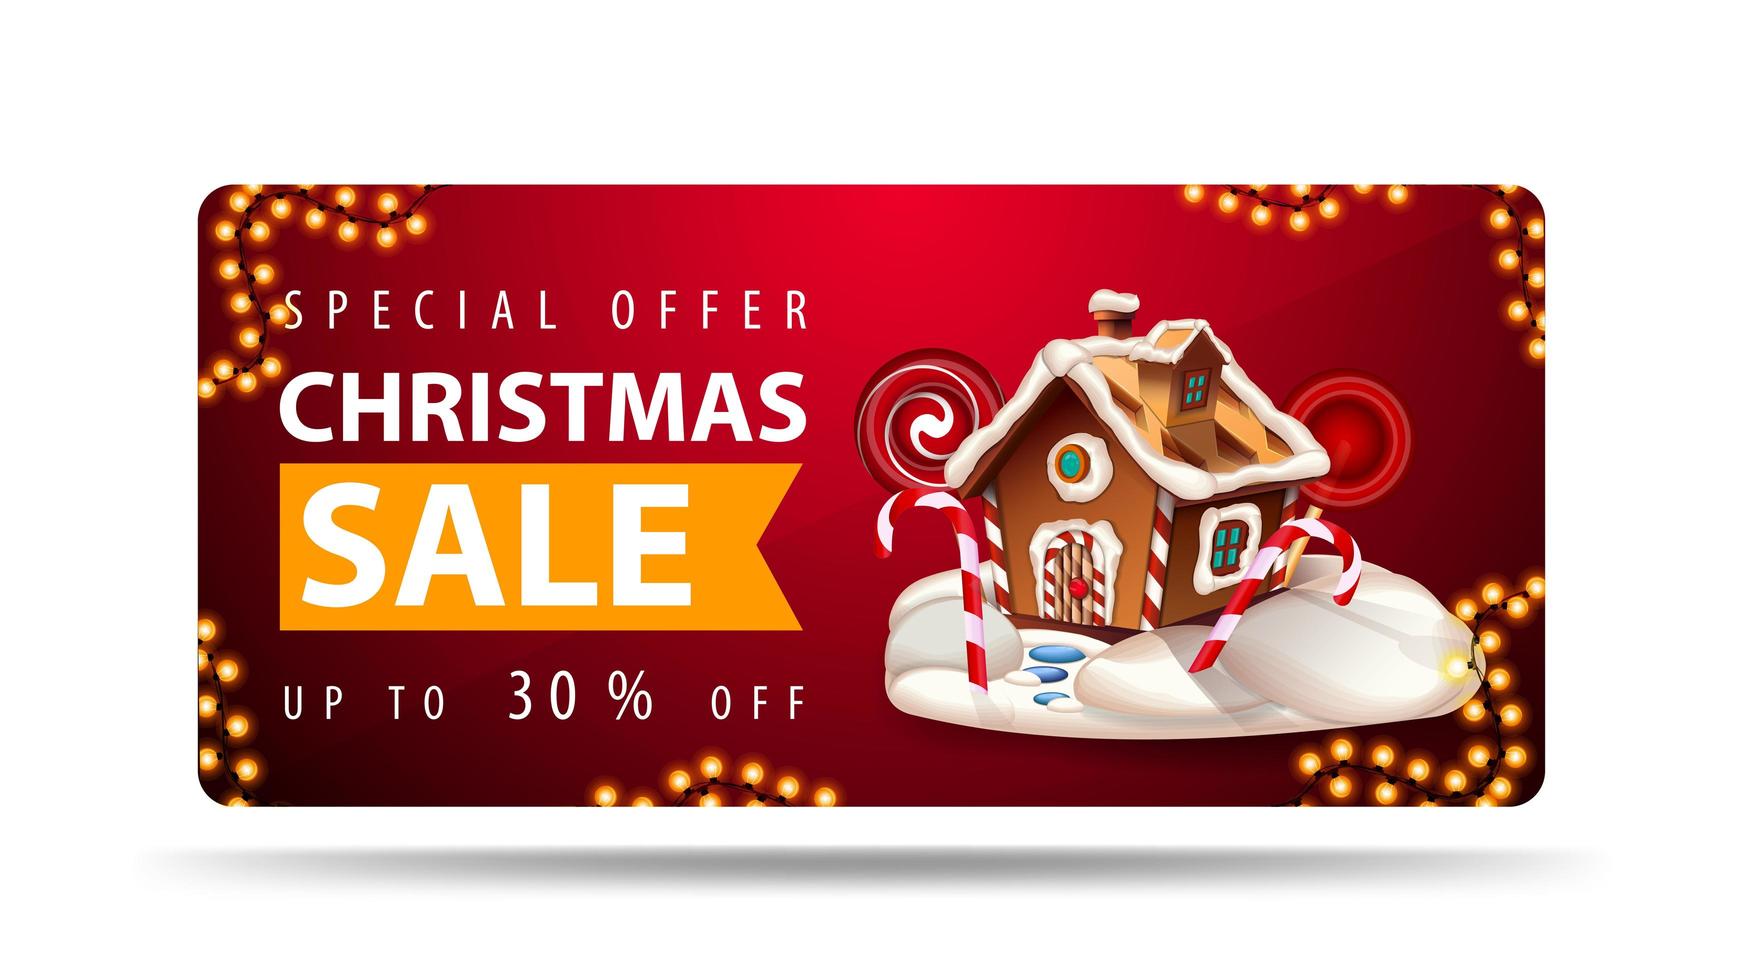 Sonderangebot, Weihnachtsverkauf, bis zu 30 Rabatt, rotes Banner mit Weihnachts-Lebkuchenhaus, Orangenband mit Angebot und Weihnachts-Lebkuchenhaus vektor